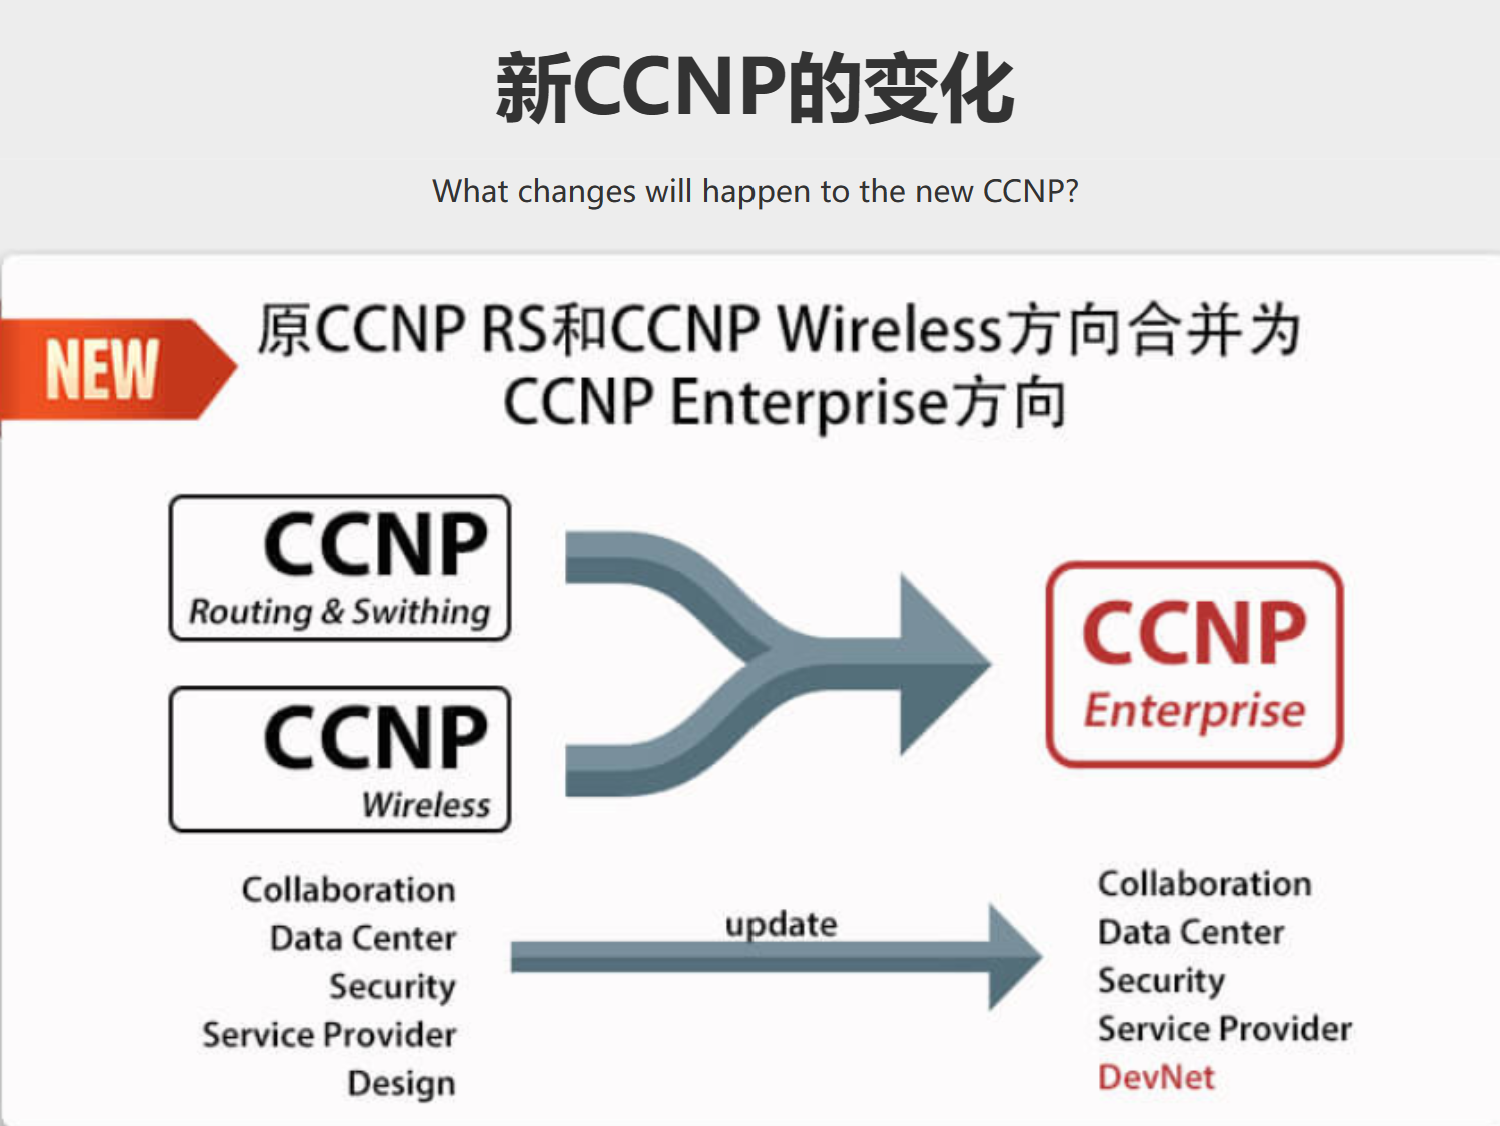 CCNP EI 思科认证网络高级工程师课程